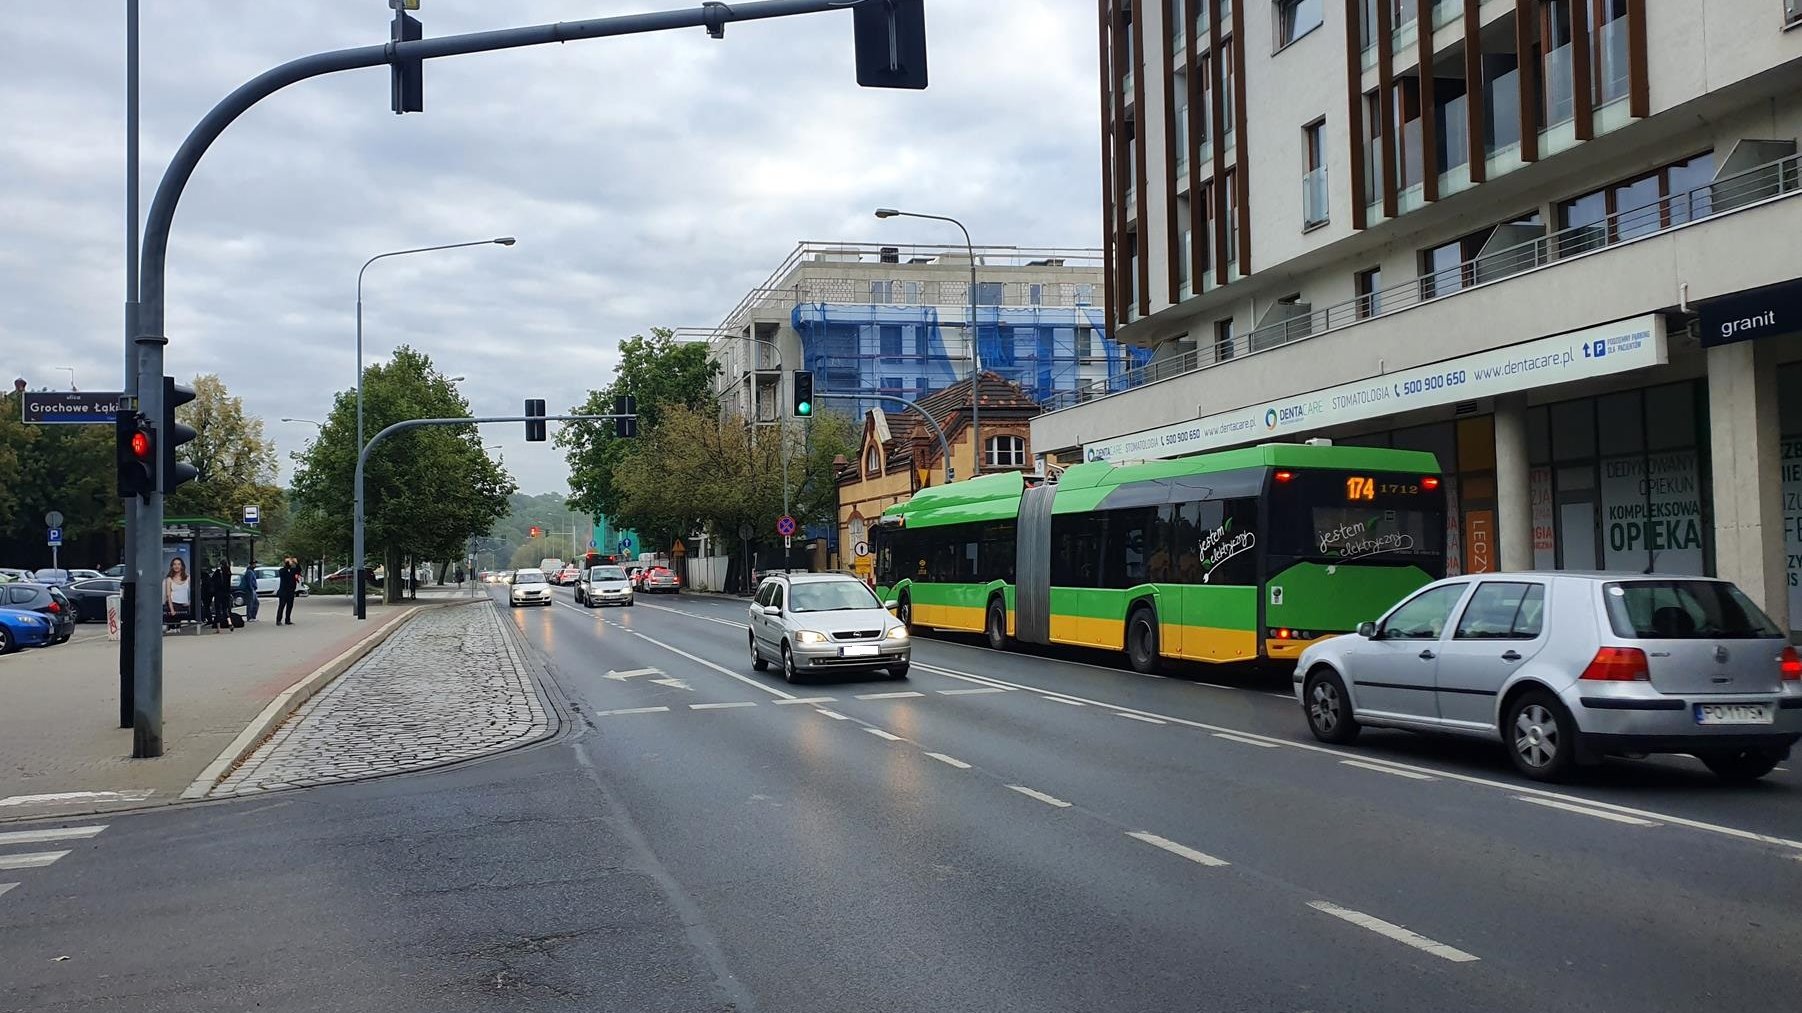 Ul. Garbary. Skrzyżowani z ulicami Grochowe Łąki i Szyperską. Widać samochody jadące w obie strony i autobus przed sygnalizacją świetlną